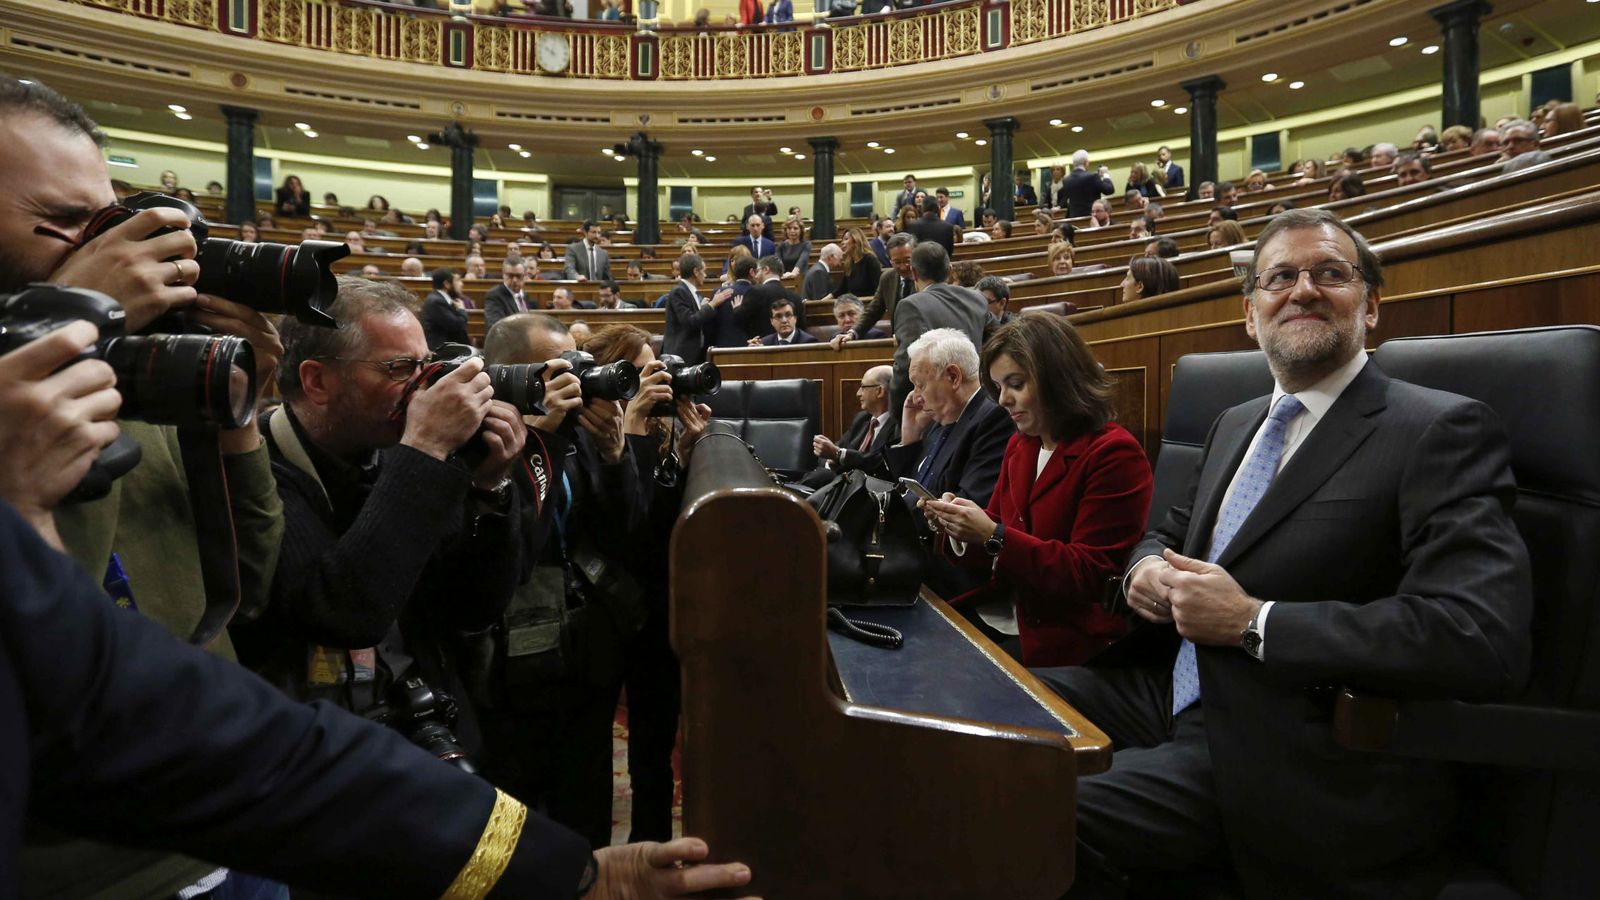 Foto: El presidente del Gobierno en funciones, Mariano Rajoy, es fotografiado en el hemiciclo del Congreso de los Diputados. (EFE)